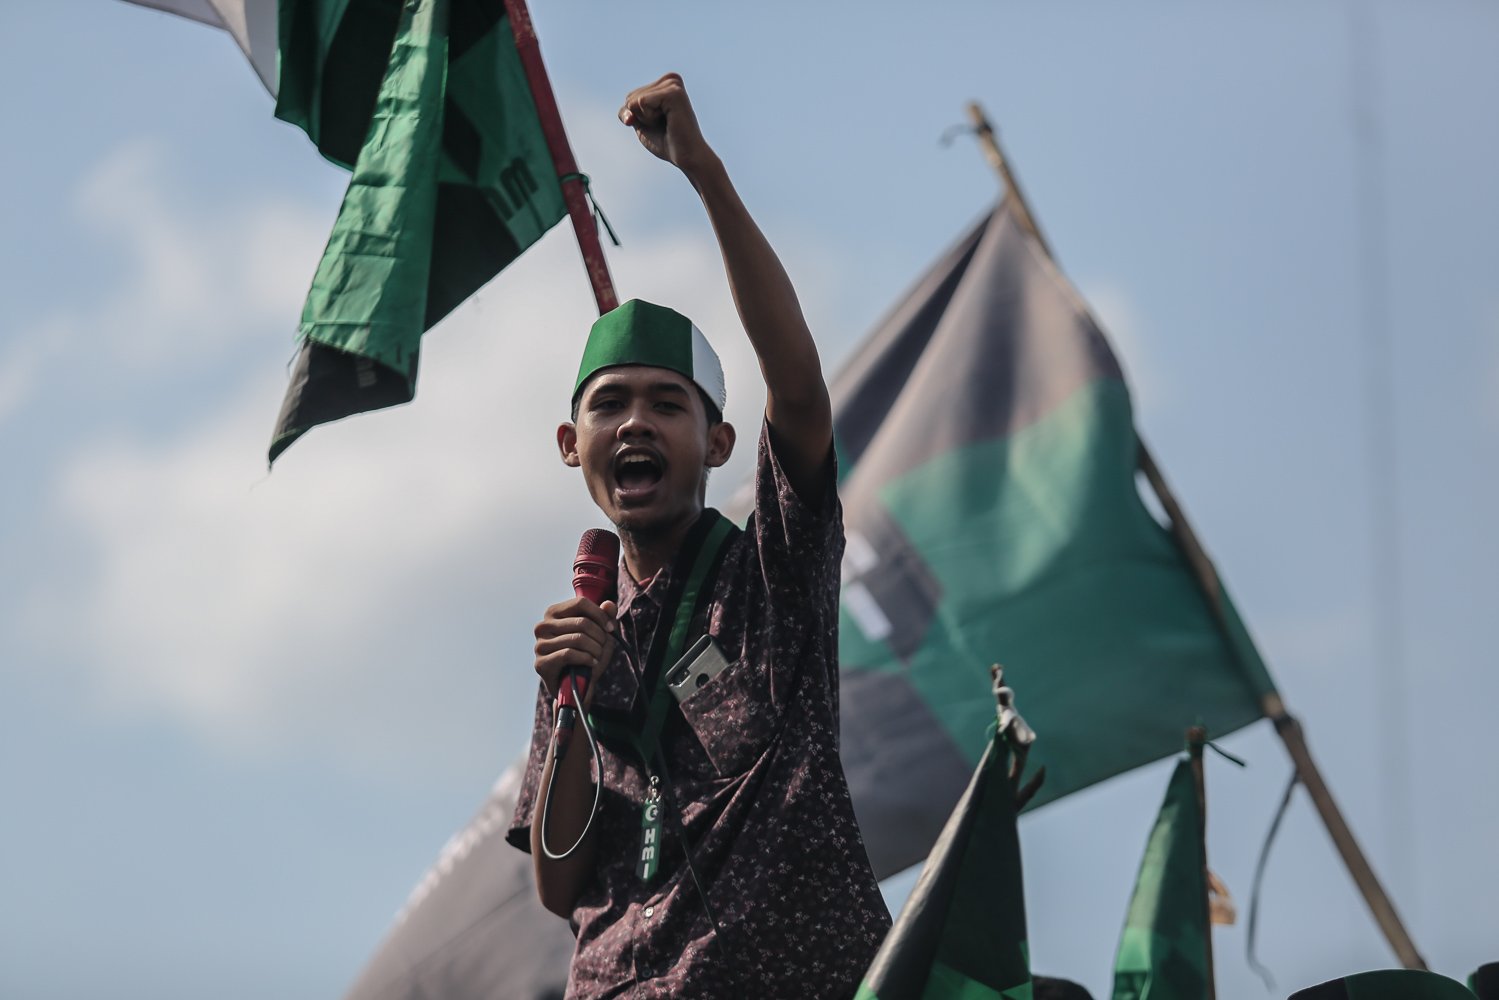 Mahasiswa yang tergabung dalam Himpunan Mahasiswa Islam (HMI) menggelar aksi unjuk rasa di depan Komplek Parlemen, Jakarta, Selasa (6/9). Dalam aksinya, mereka menolak keputusan pemerintah menaikkan harga Bahan Bakar Minyak (BBM) bersubsidi dan menghimbau pemerintah untuk meninjau ulang keputusan tersebut.